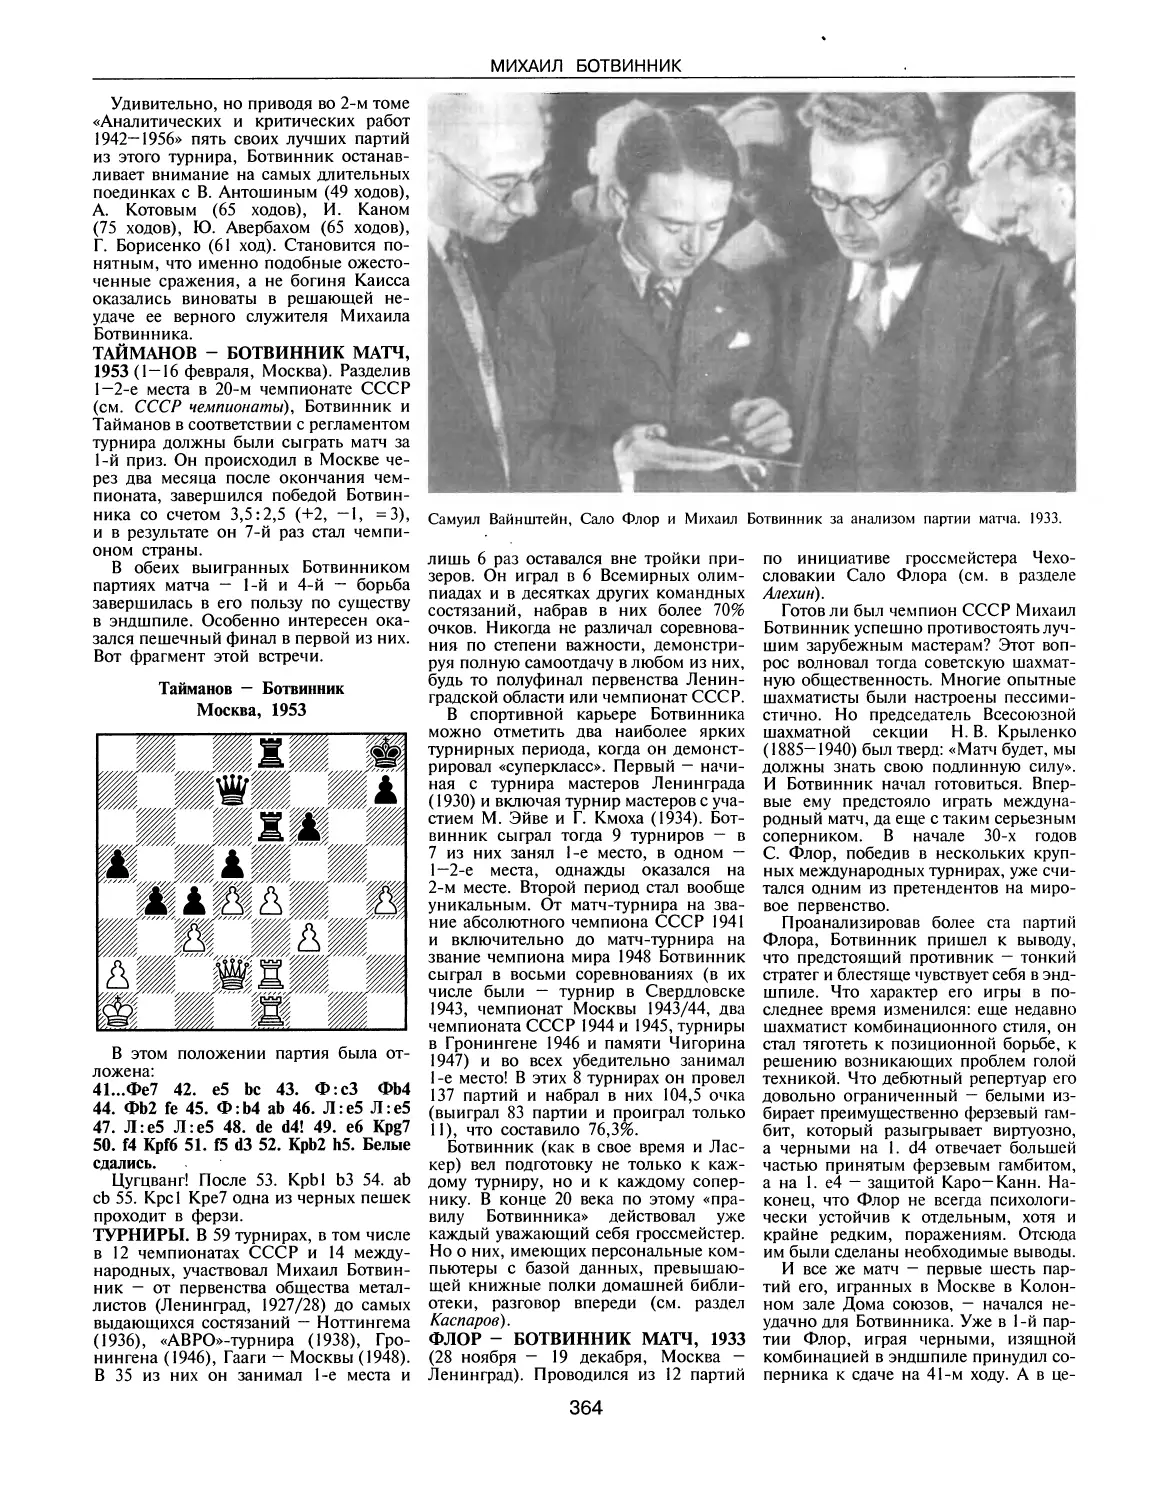 Тайманов — Ботвинник матч, 1953
Турниры
Флор — Ботвинник матч, 1933